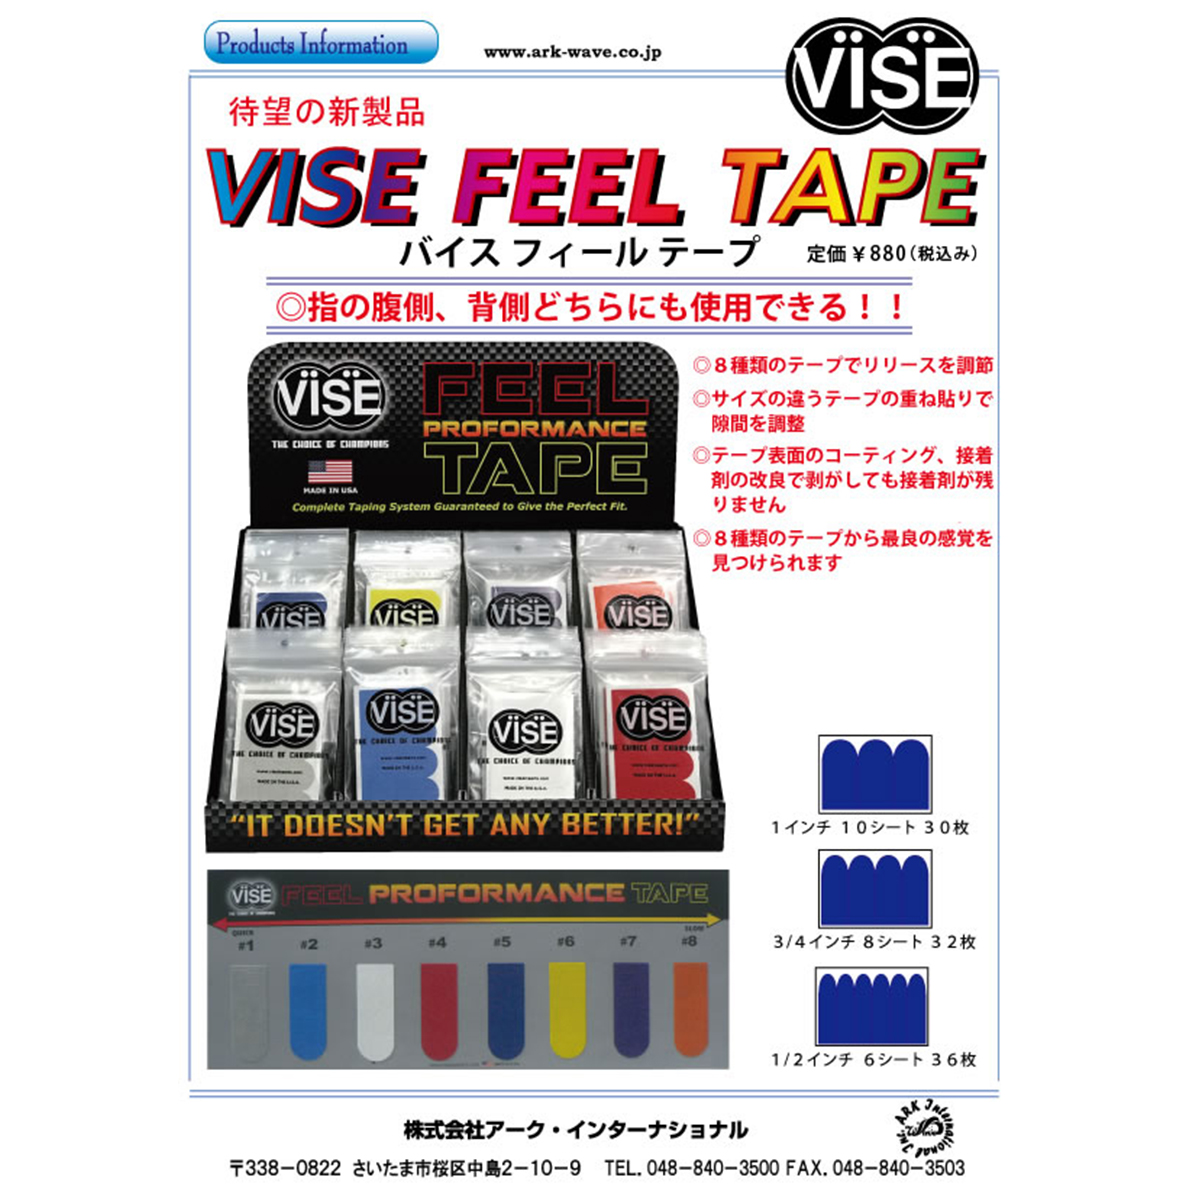 【12袋セット】VISE フィールテープ#1(灰色)